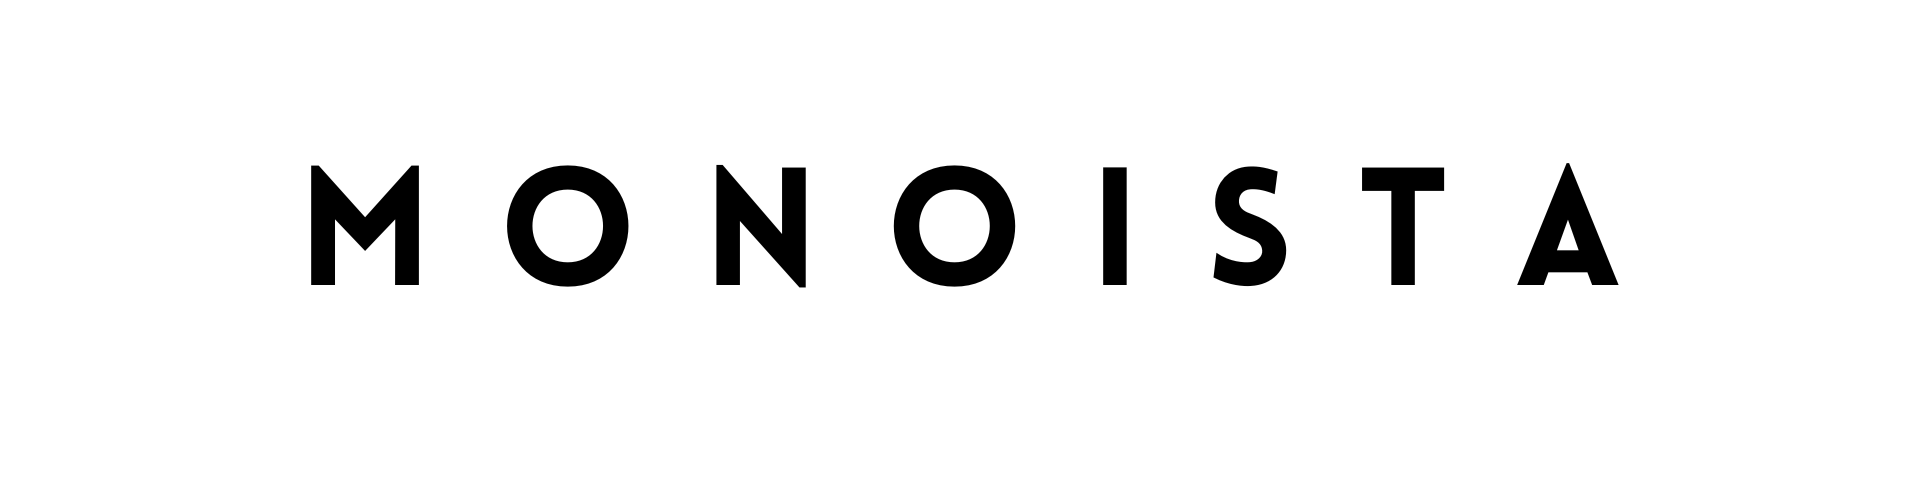 MONOISTA logo - About